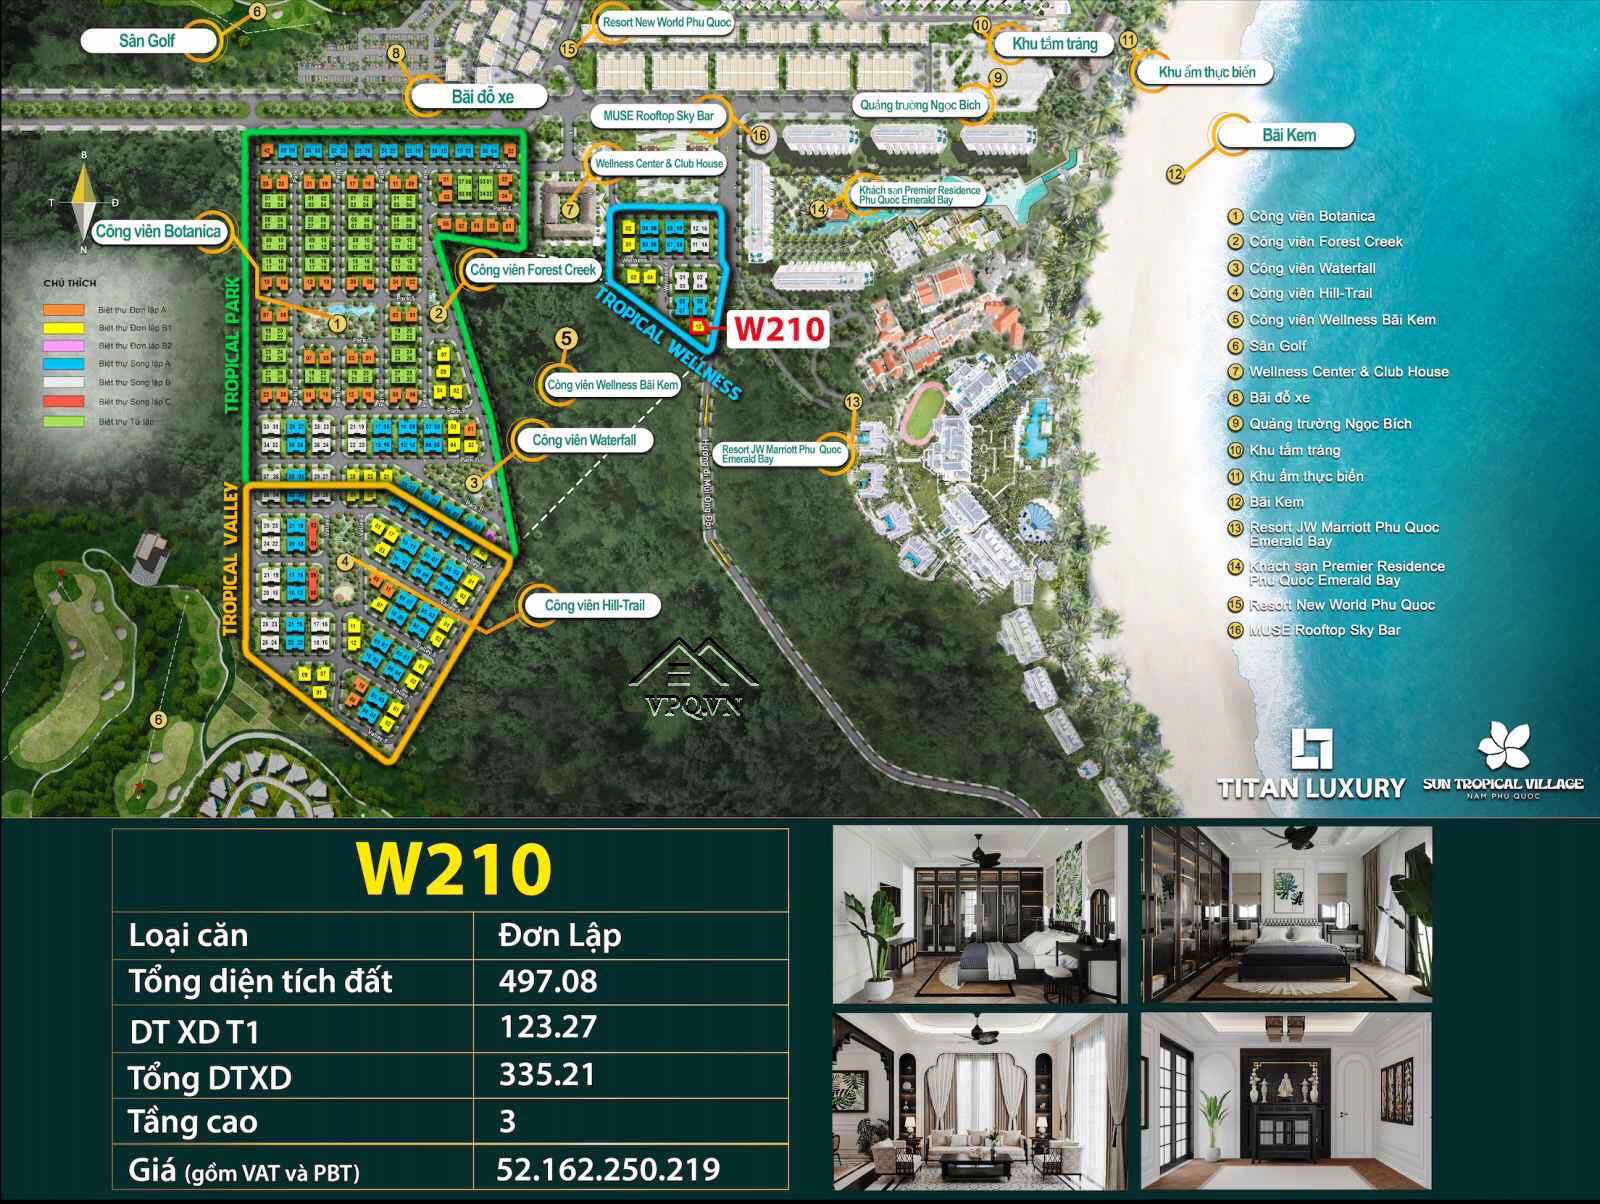 Biệt thự đơn lập W210 Sun Tropical Village trên mặt bằng dự án